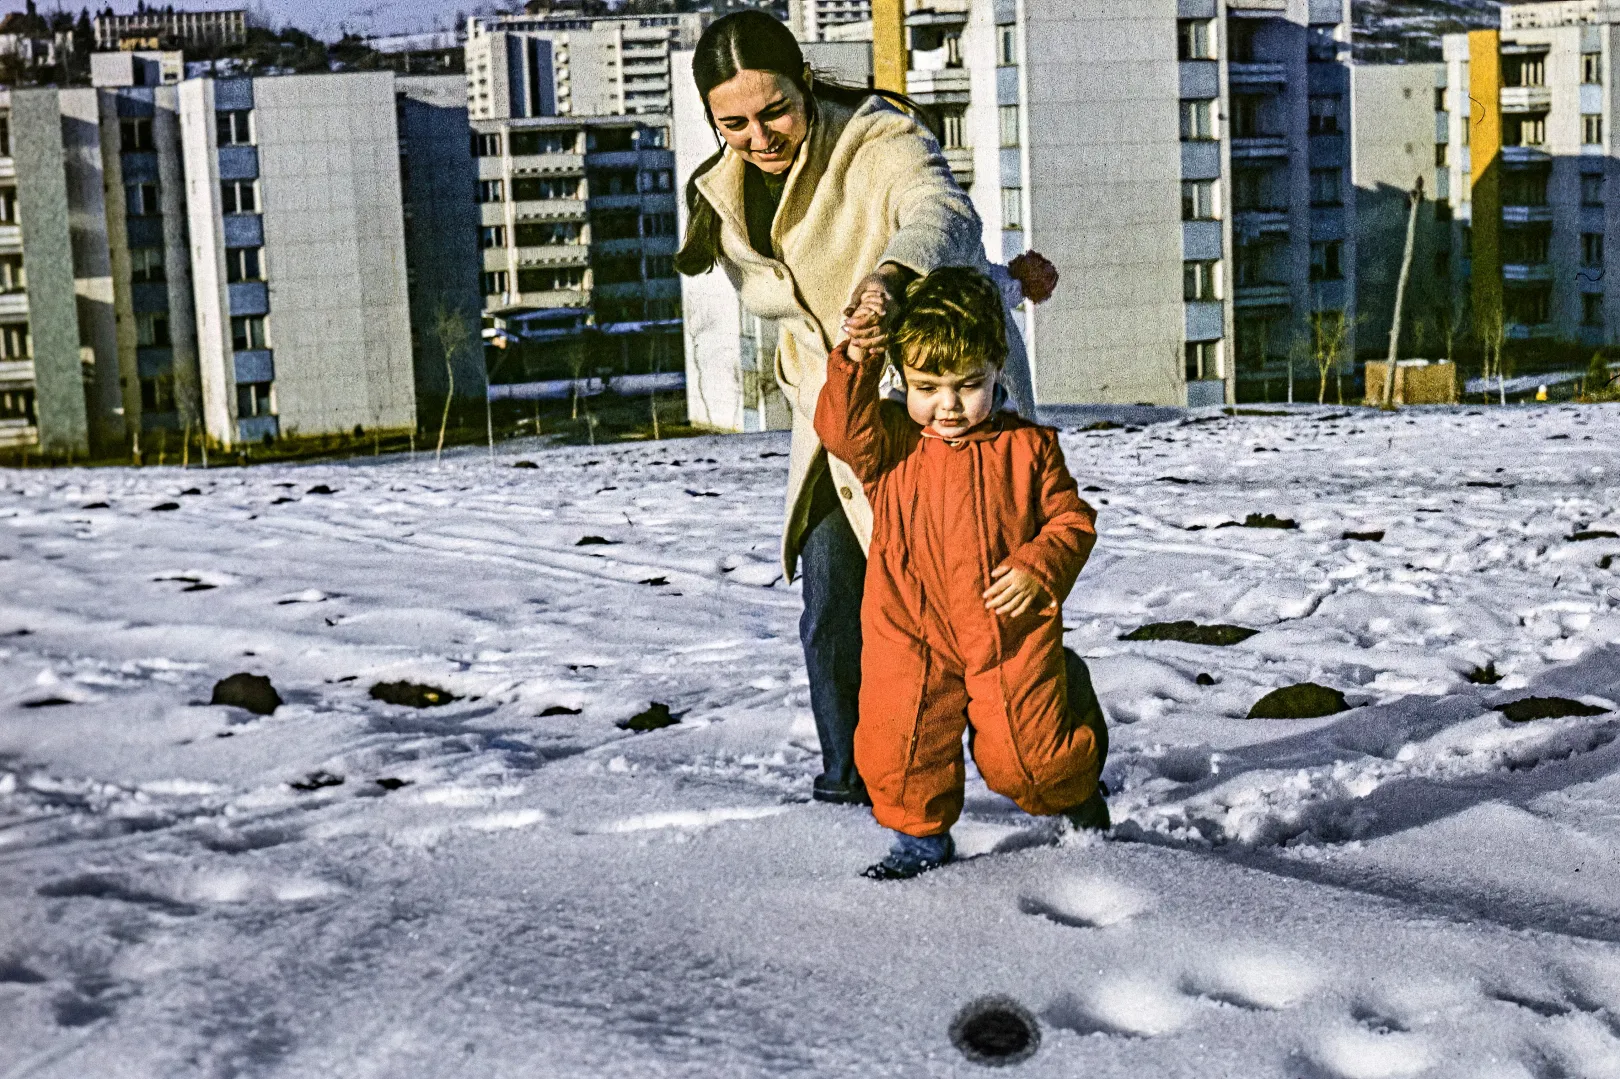 Dragomán György kisgyerekként az édesanyjával, Marosvásárhelyen, 1976-ban – Fotó: Dragomán Pál / Azopan Fotóarchívum